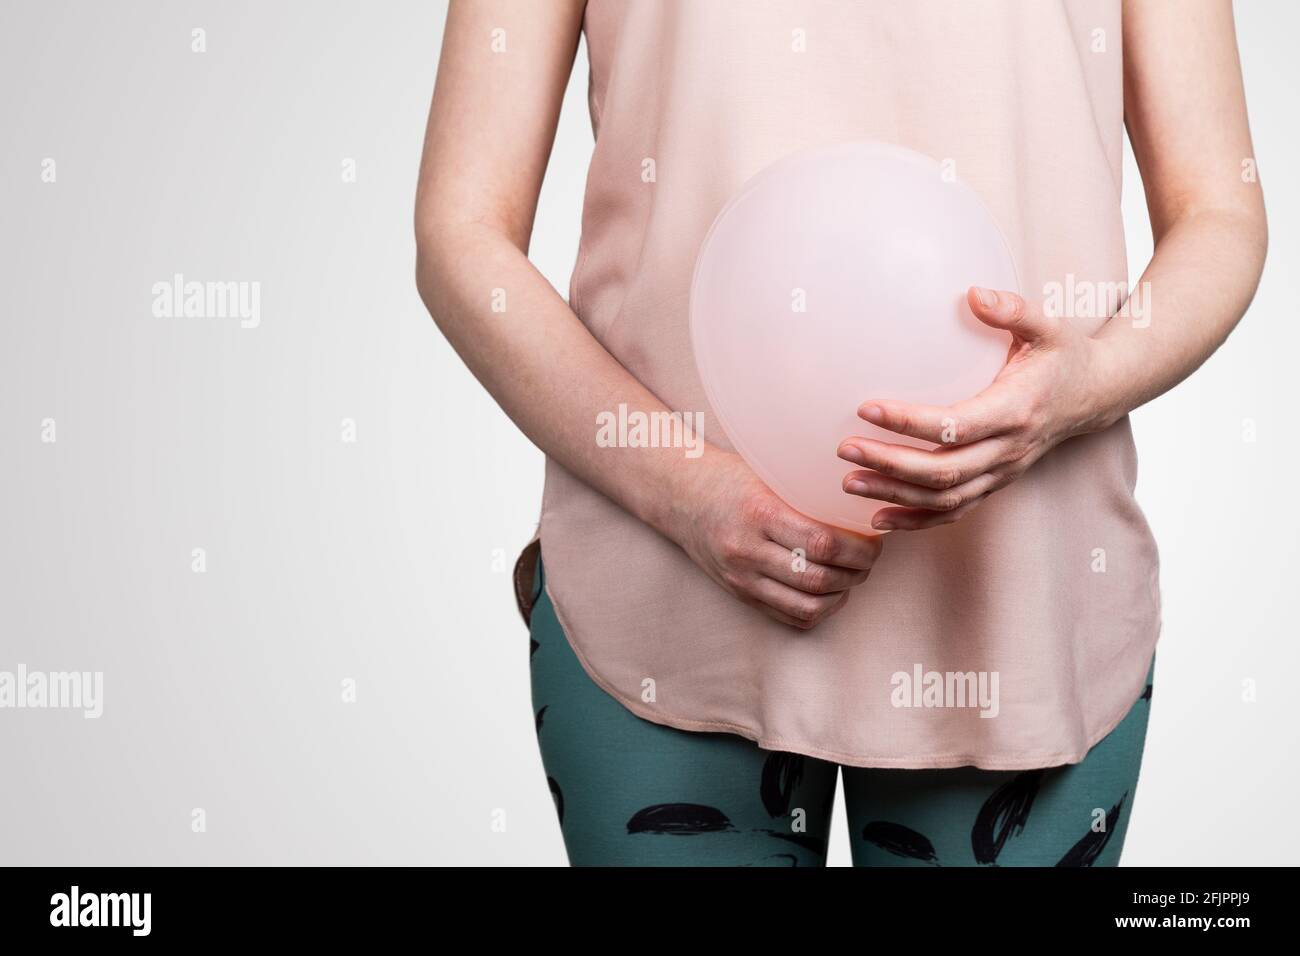 Femme enceinte ou ballonnement du ventre. Ballon rose dans les mains de la  femme. Arrière-plan abstrait Photo Stock - Alamy